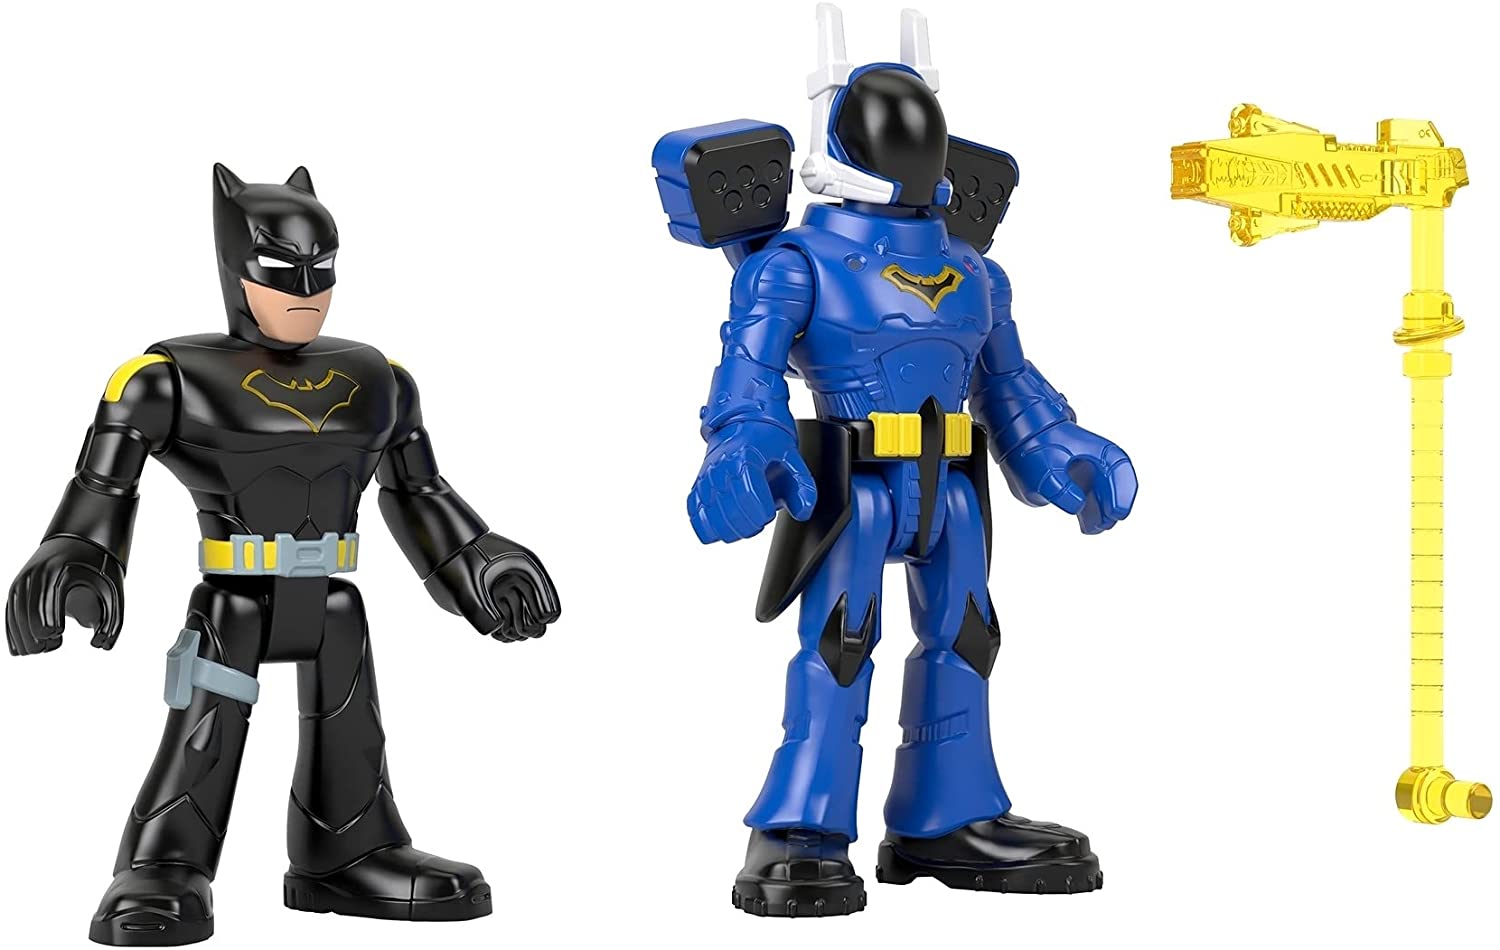 Imaginext DC Super Friends Batman & Rookie Figures